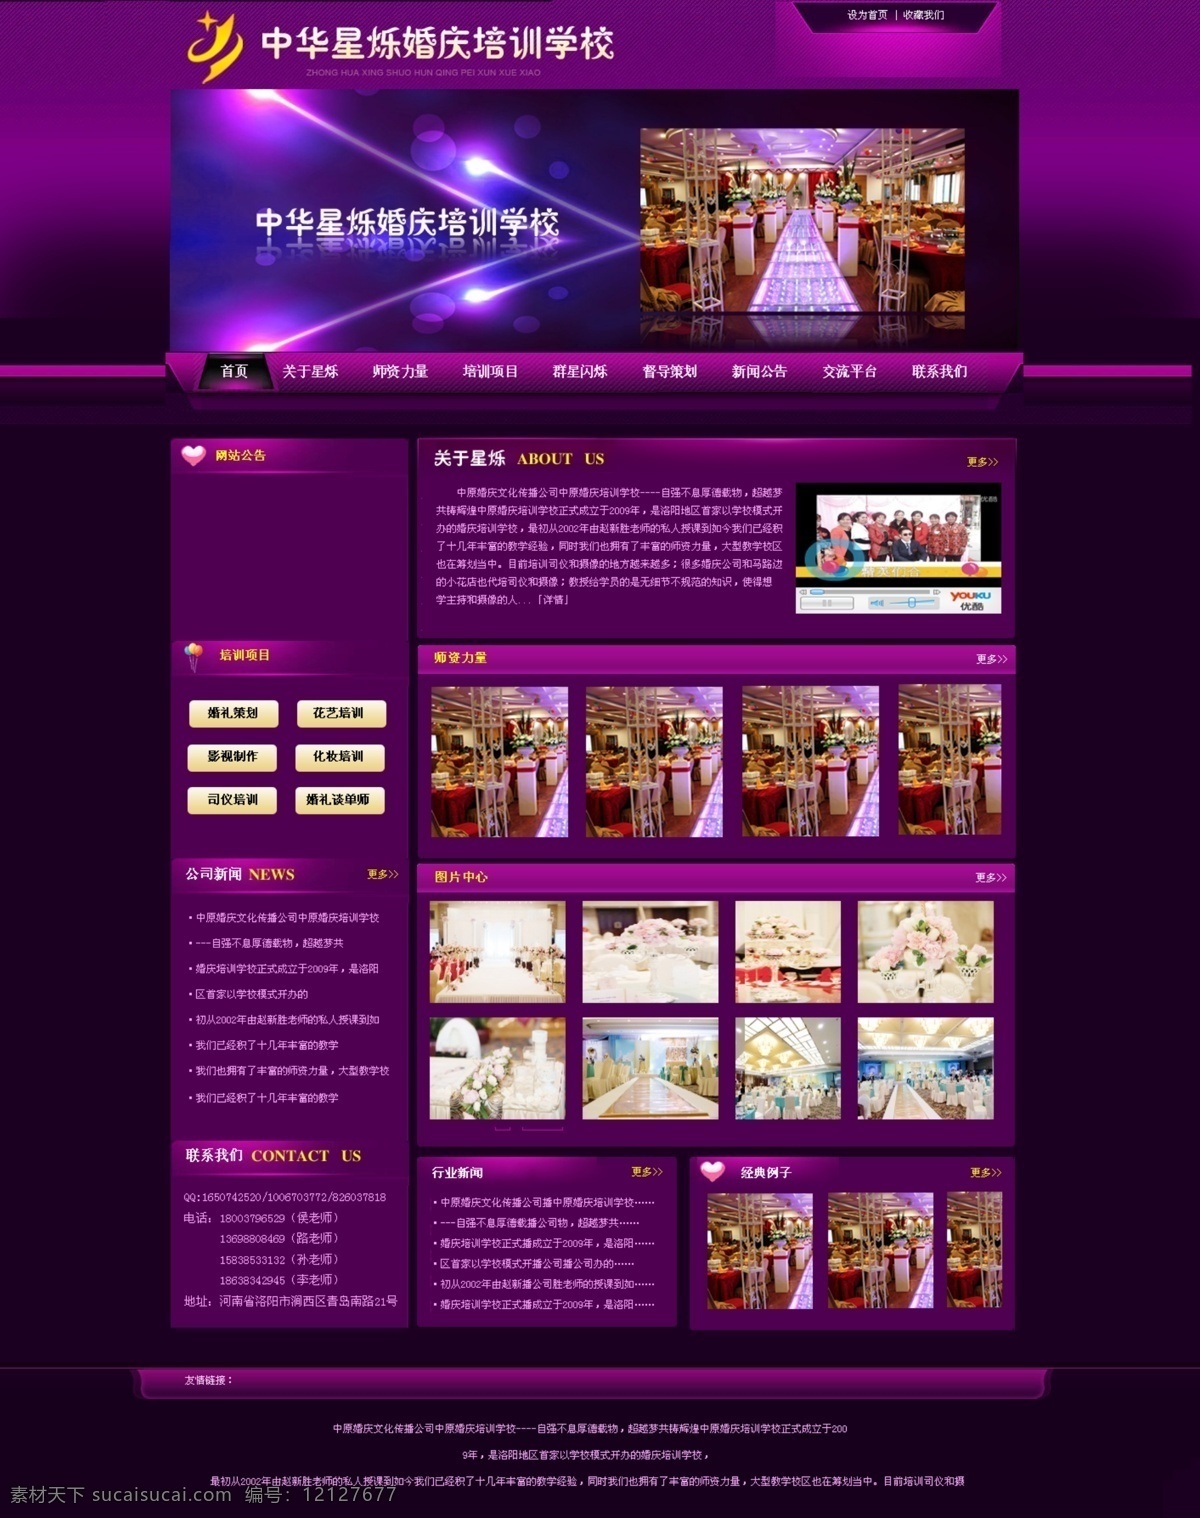 紫色网站 学校 紫色 酷炫网站 网站模板 女性网站 婚庆网站 企业网站首页 中文模板 网页模板 源文件